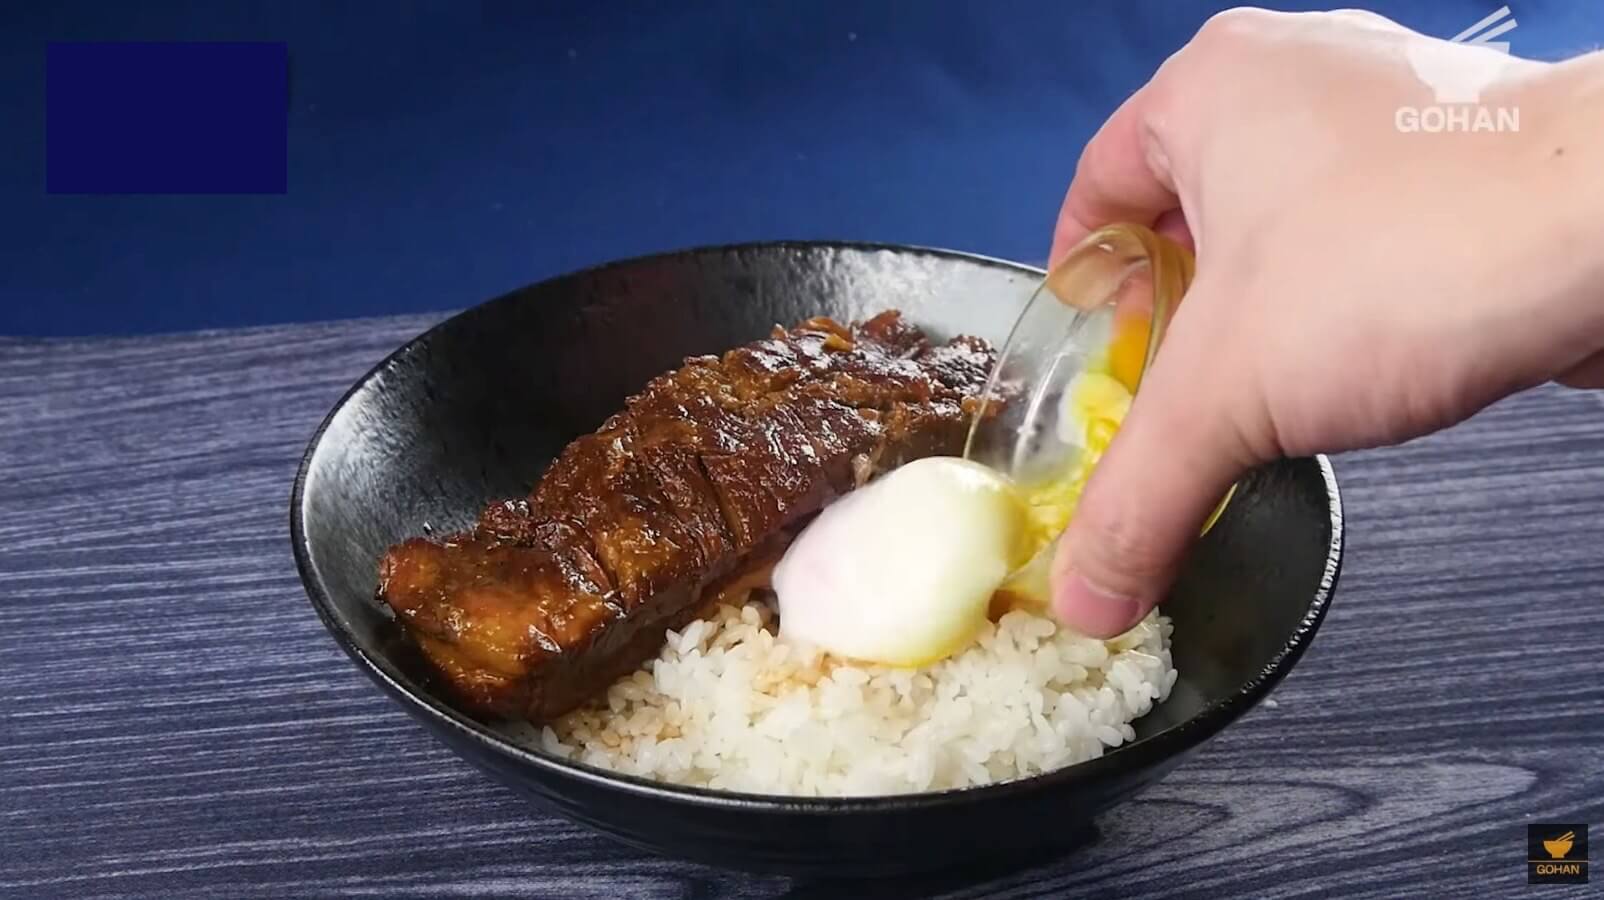 簡単レシピ それはロマン チャーたま丼 の作り方 簡単男飯レシピ 作り方 Gohan